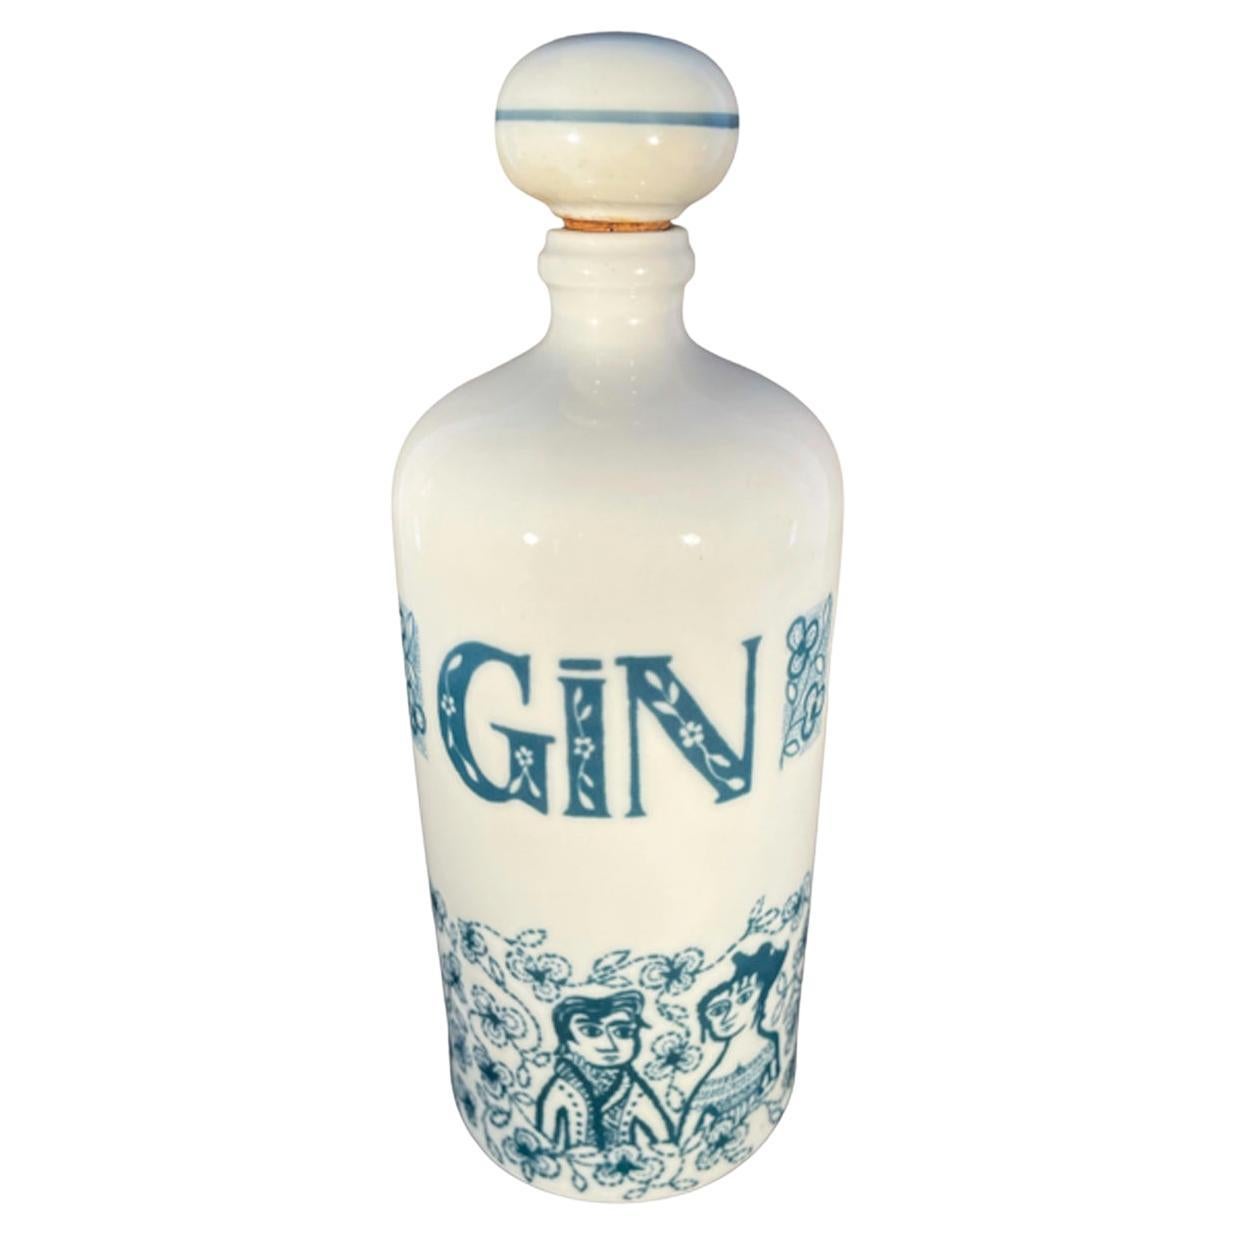 Carafe vintage en porcelaine « Gin » d'Albertenkunstadt, fabriquée en Allemagne de l'Ouest